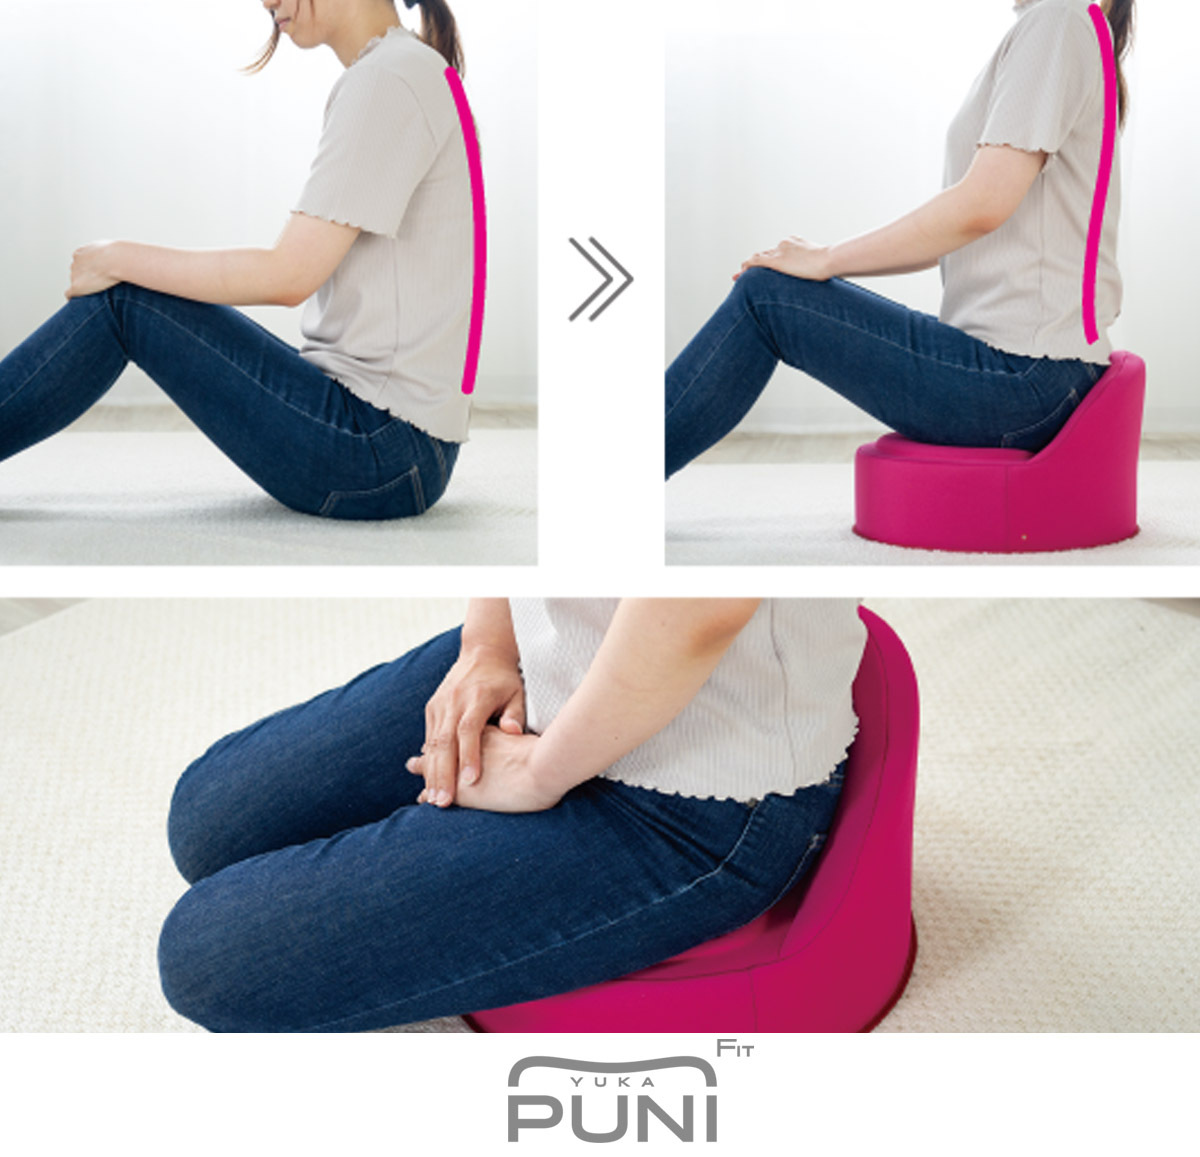 エクスジェル EXGEL 床プニフィット PUN32 腰痛 クッション 床 おしゃれ 日本製 座椅子 ジェルクッション 姿勢 腰痛対策 体圧分散 こたつ